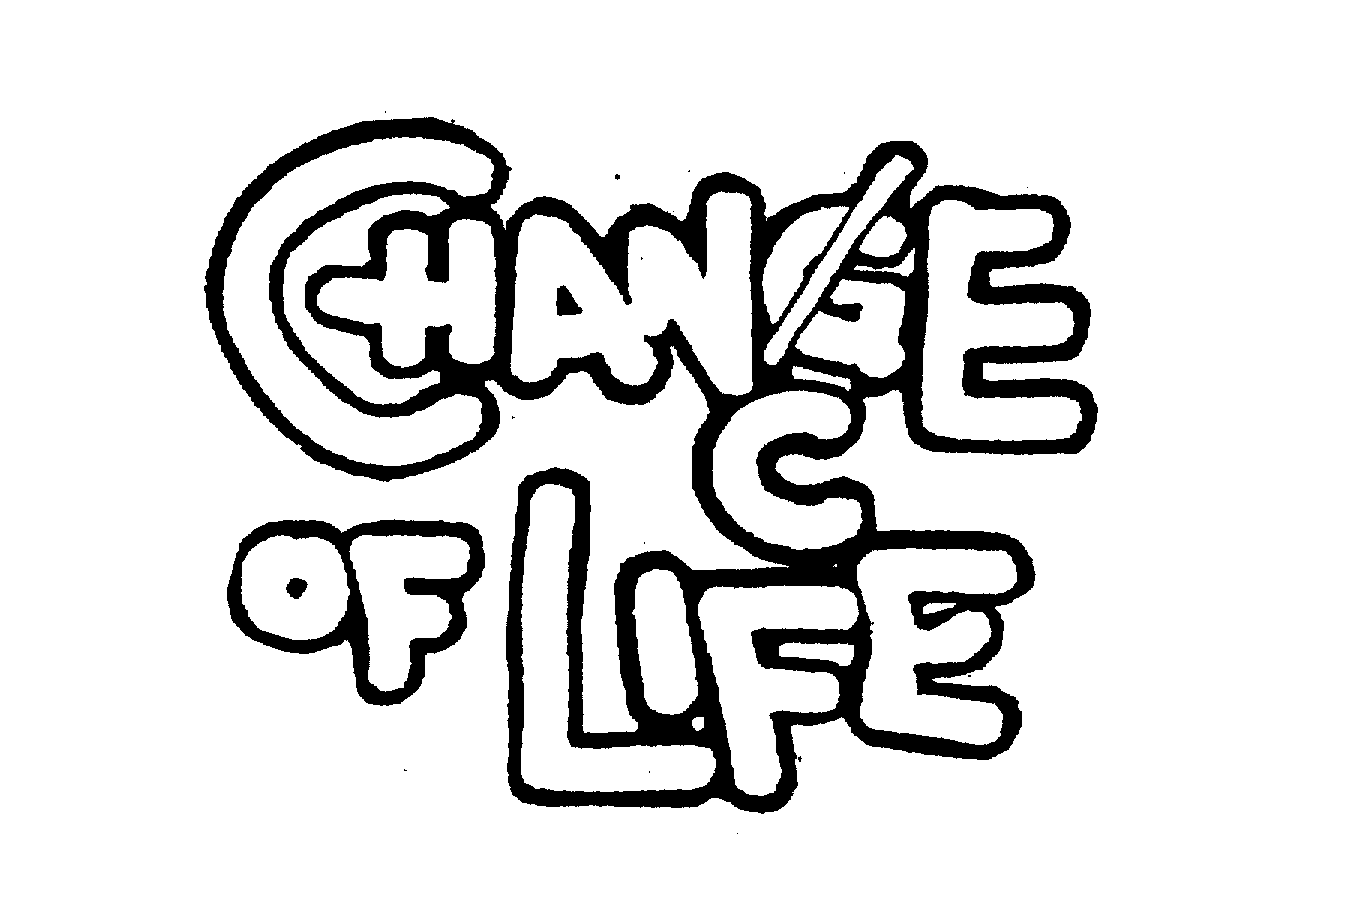  C CHANGE OF LIFE